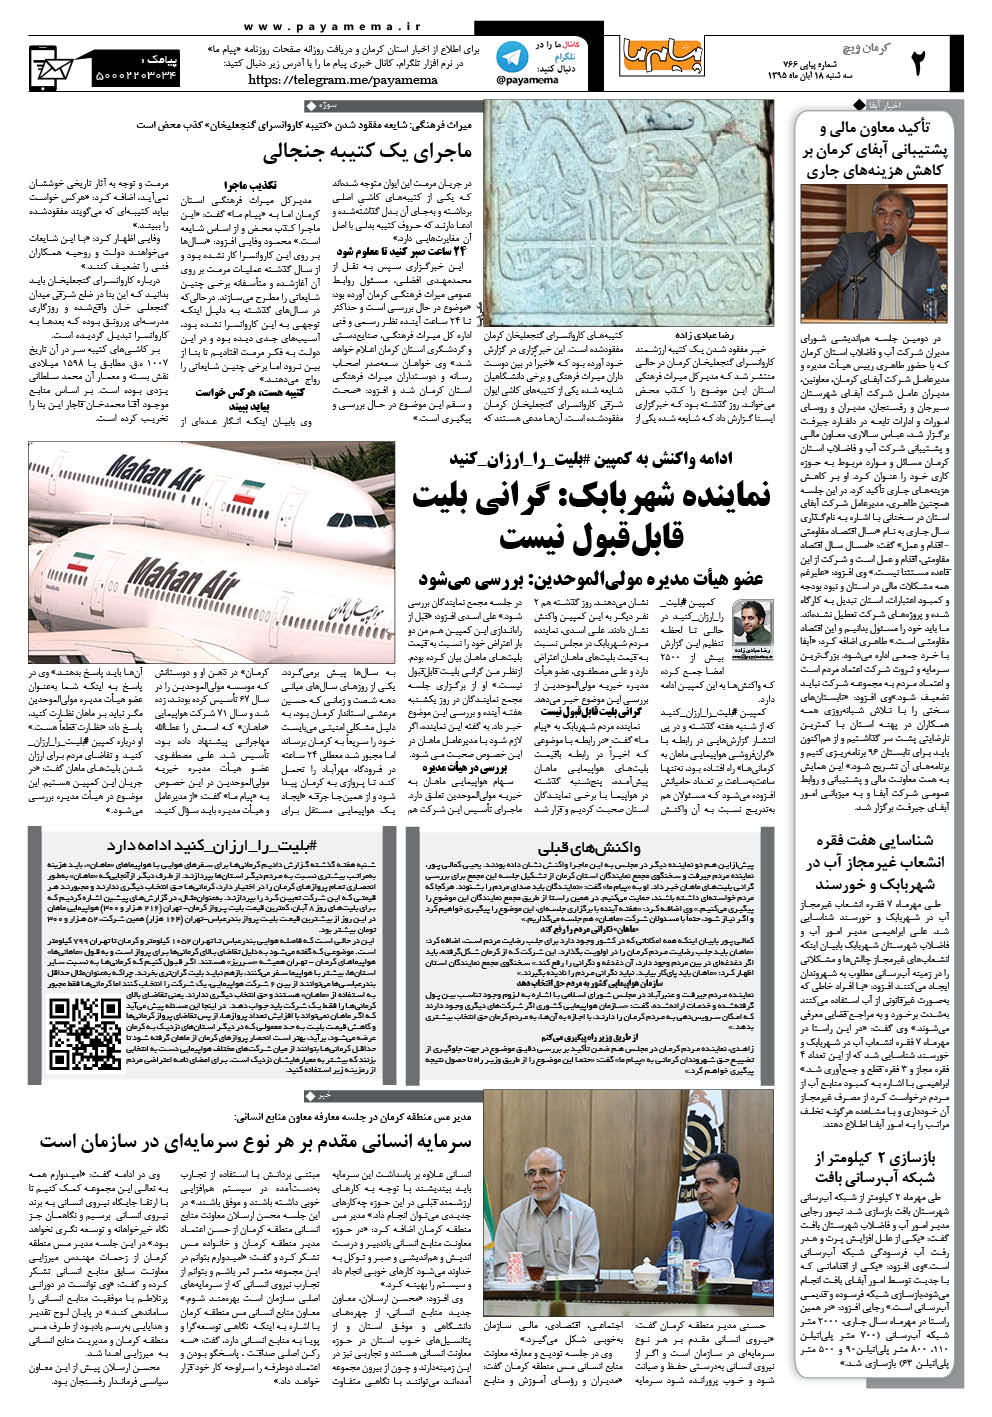 صفحه کرمان ویچ شماره 766 روزنامه پیام ما